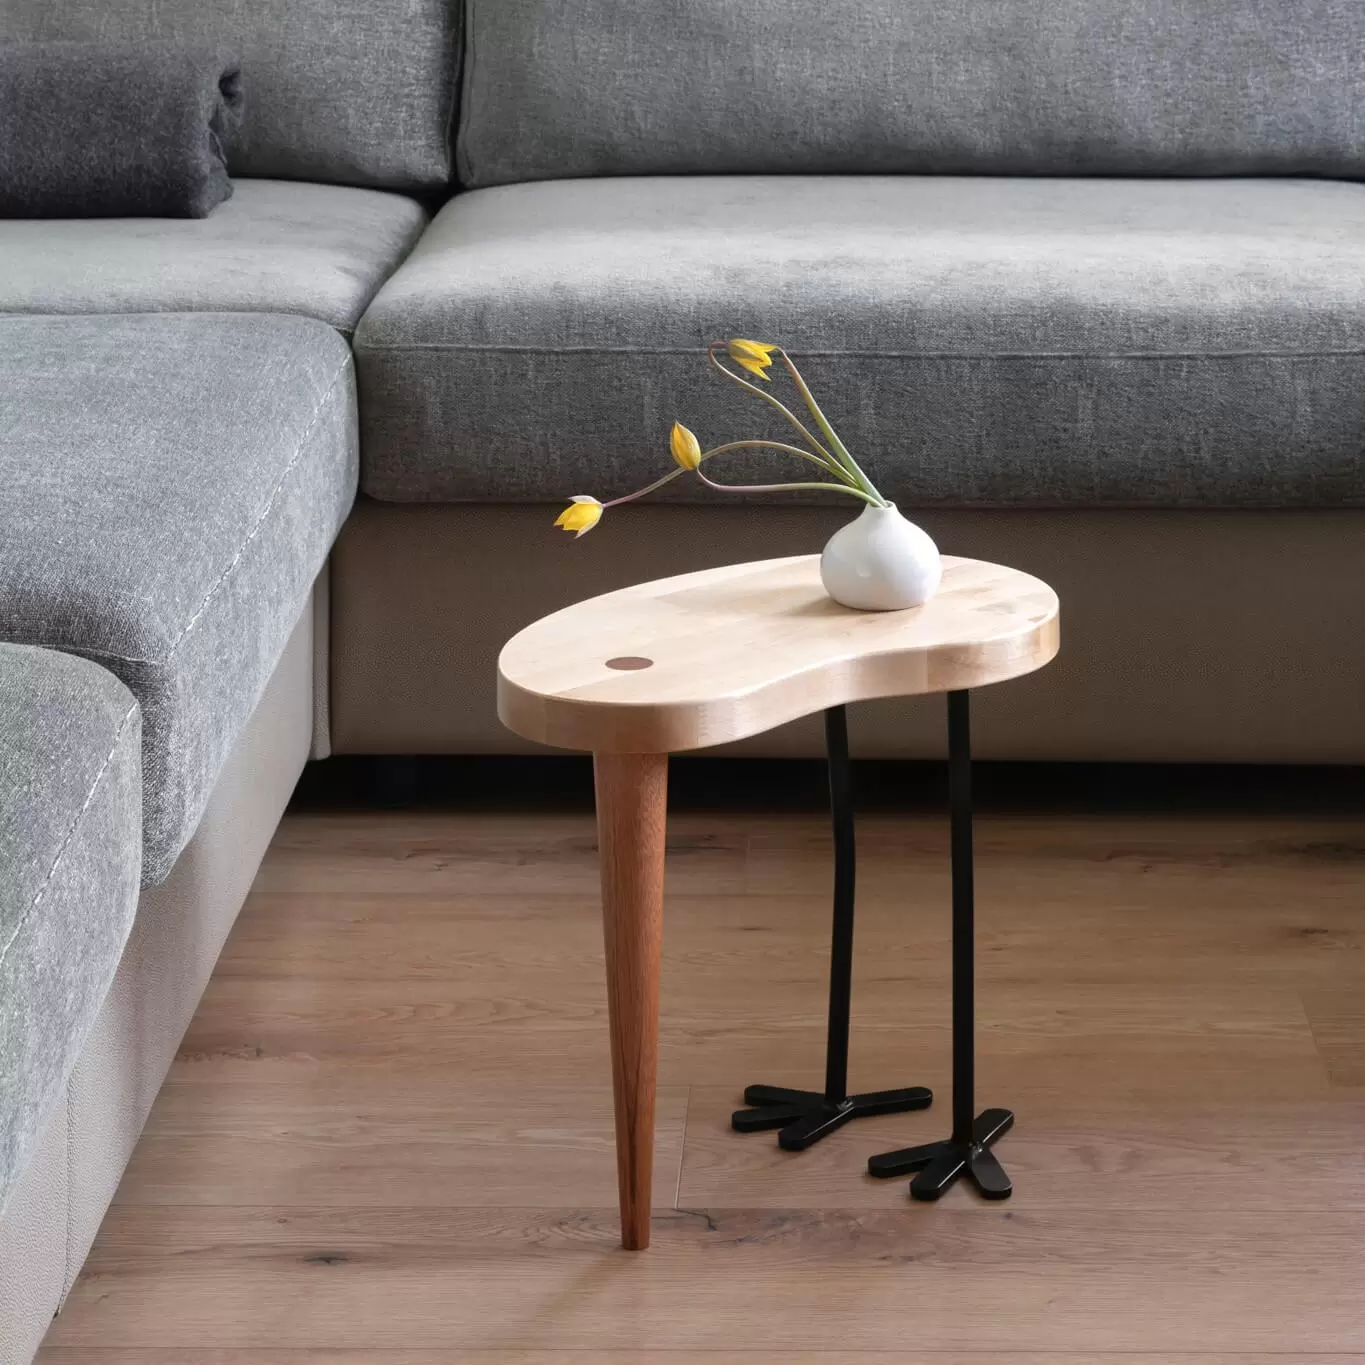 Designerski stolki kawowy z grubym blatem z brzozy skandynawskiej w kolorze naturalnym drewna. Podparty nogą z mahoniu i dwoma nogami z metalu w kolorze czarnym.